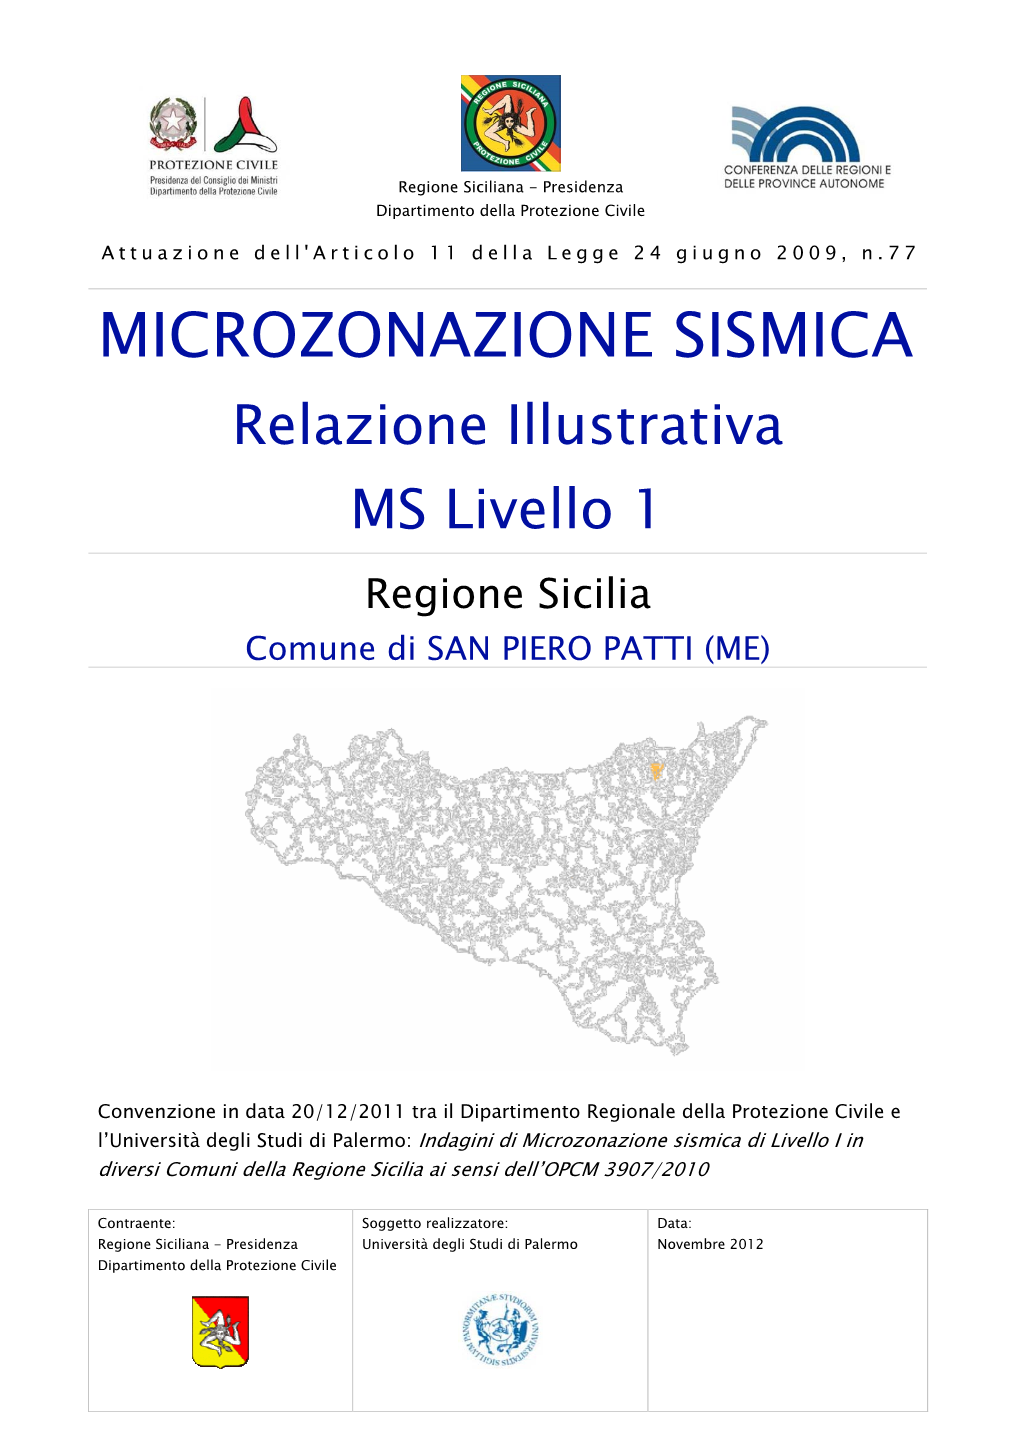 MICROZONAZIONE SISMICA Relazione Illustrativa MS Livello 1 Regione Sicilia Comune Di SAN PIERO PATTI (ME)